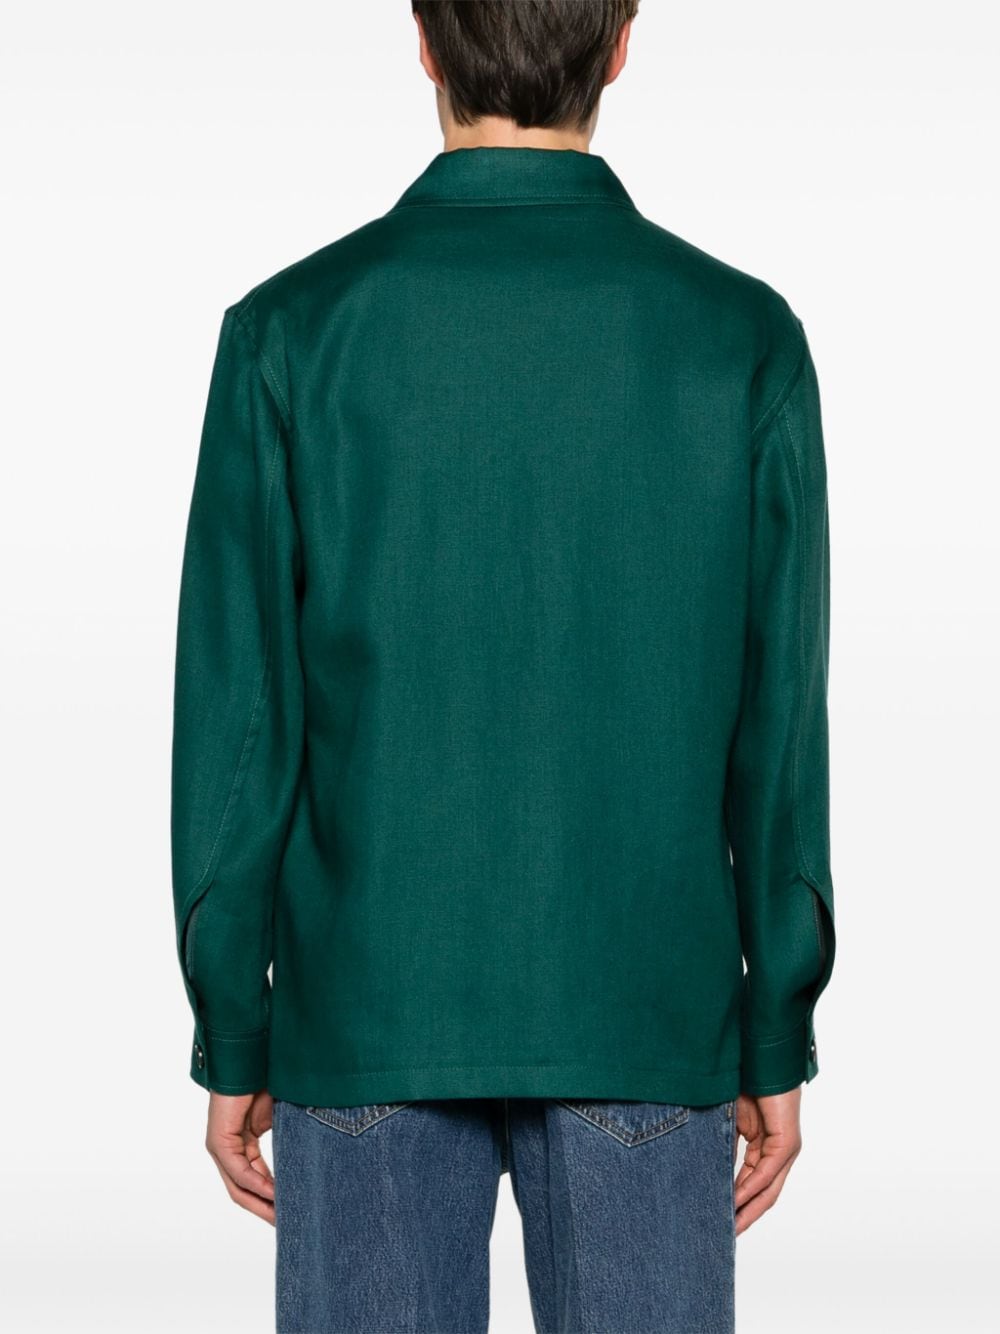 Giacca- camicia  Damian verde petrolio lino